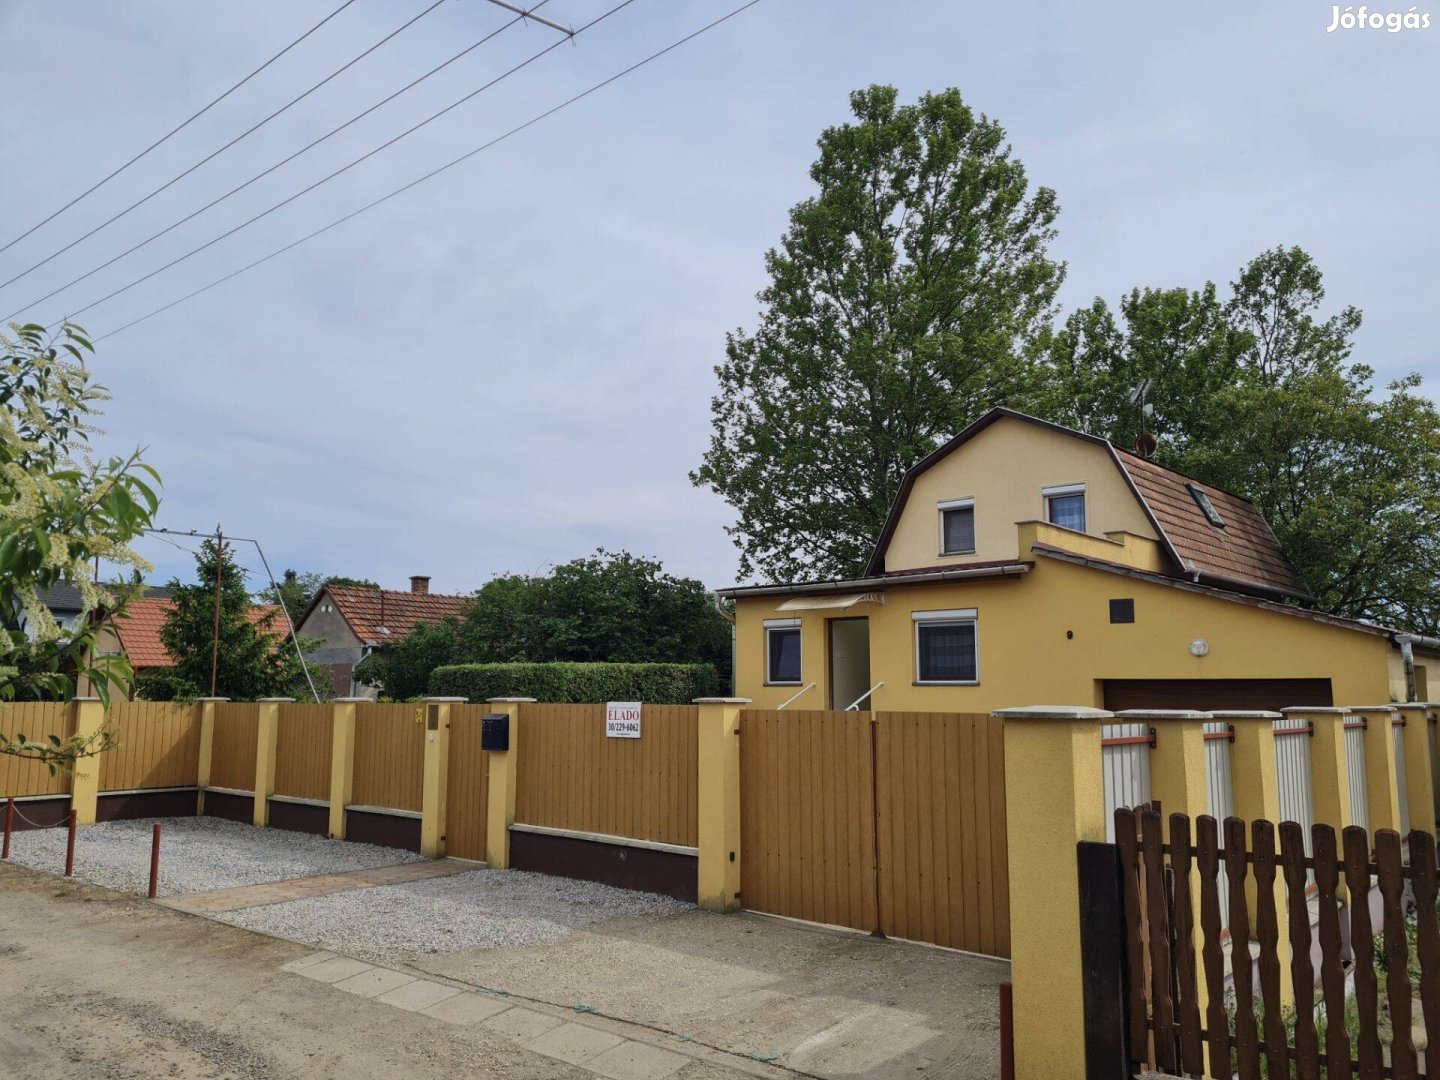 Debrecen-Bayk András kerti 3 szoba+nappalis ház nagy műhellyel eladó